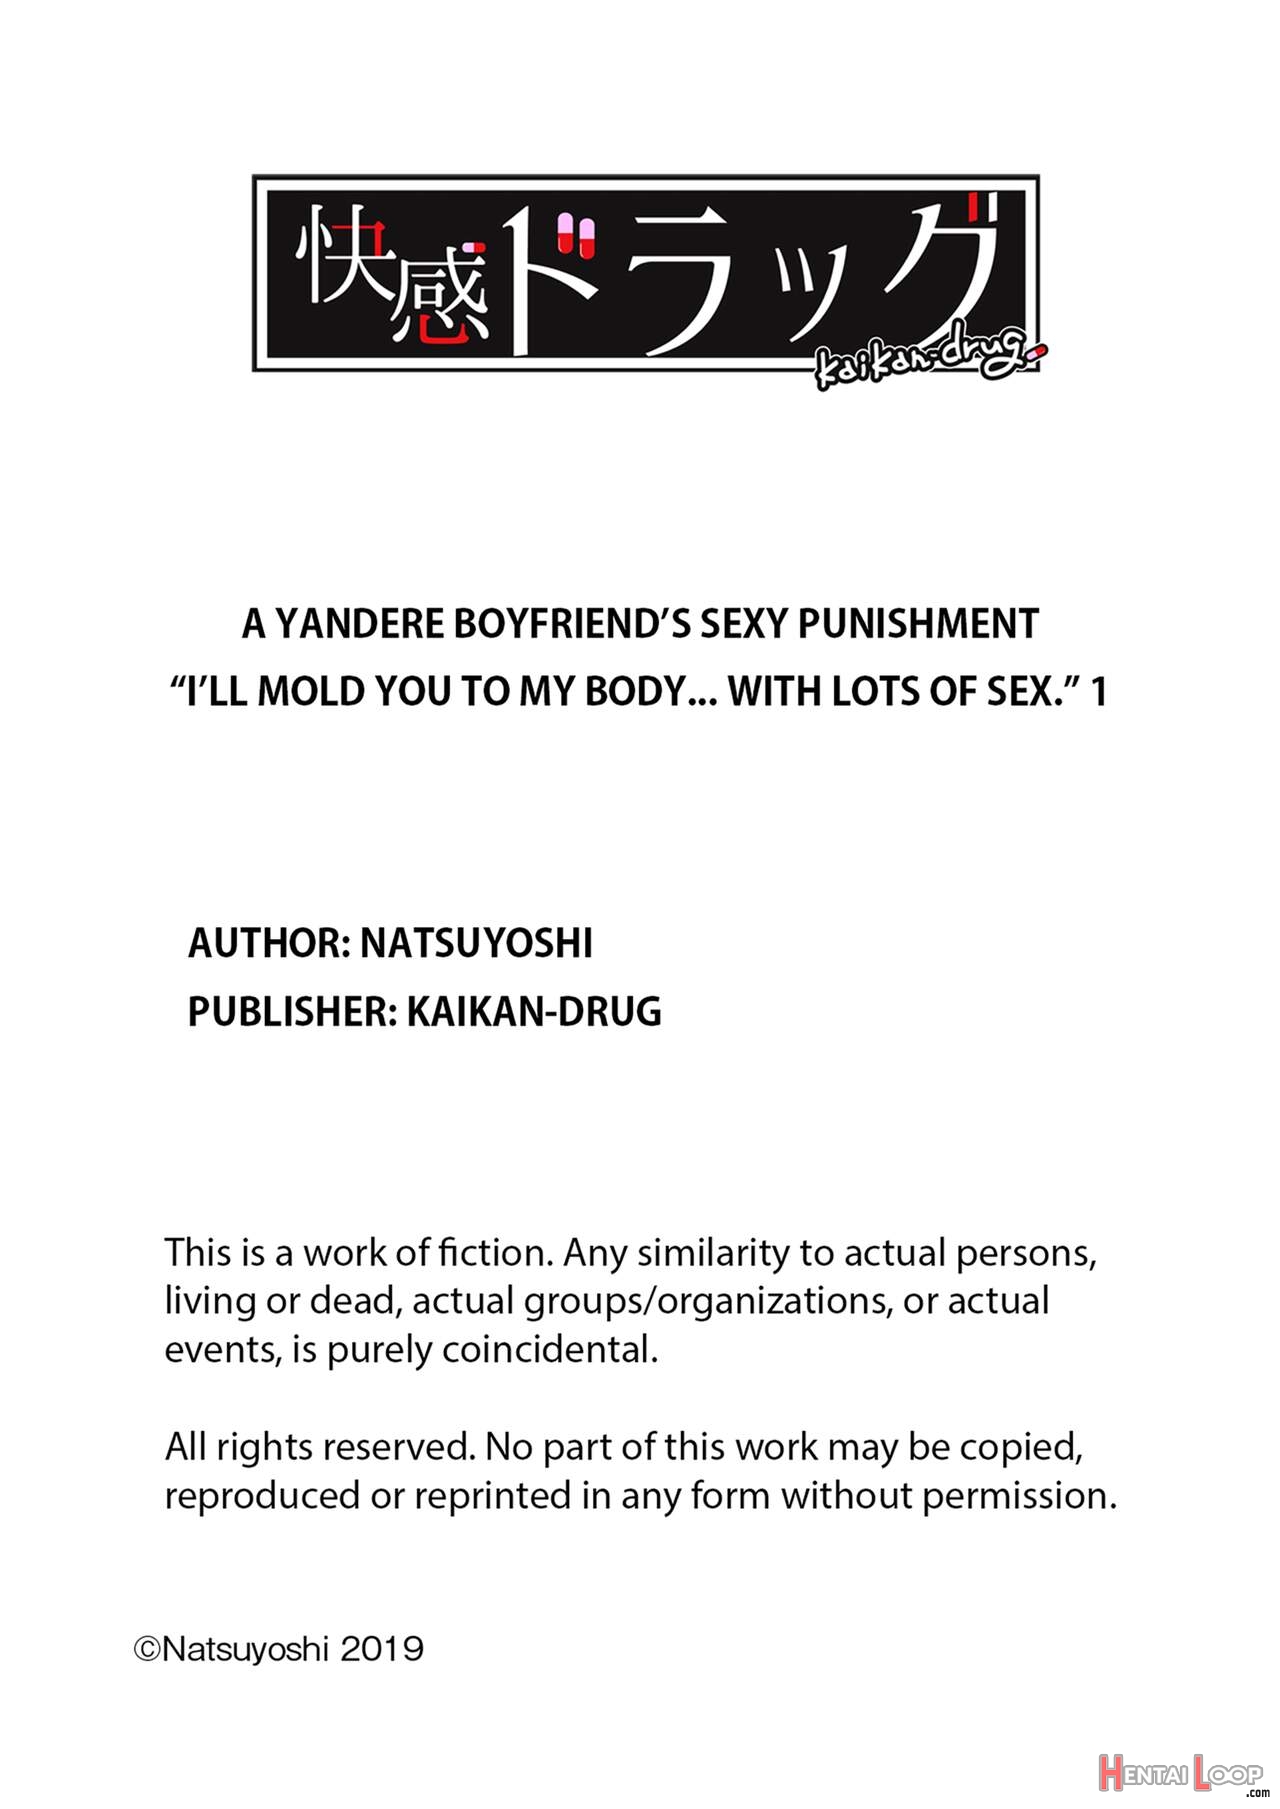 A Yandere Boyfriend's Sexy Punishment page 99